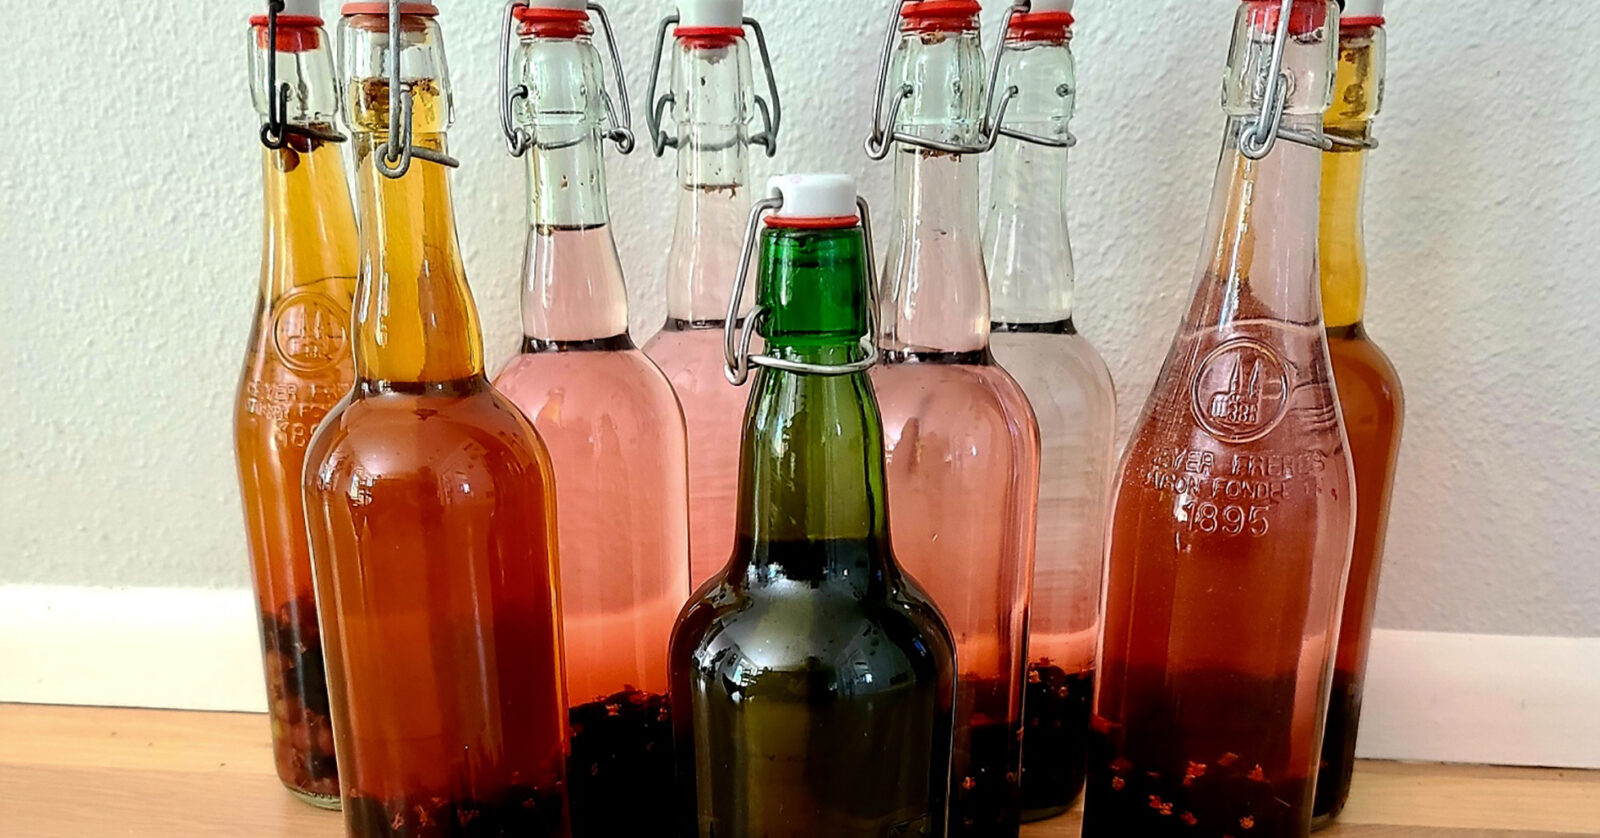 assortment of vinegar bottles